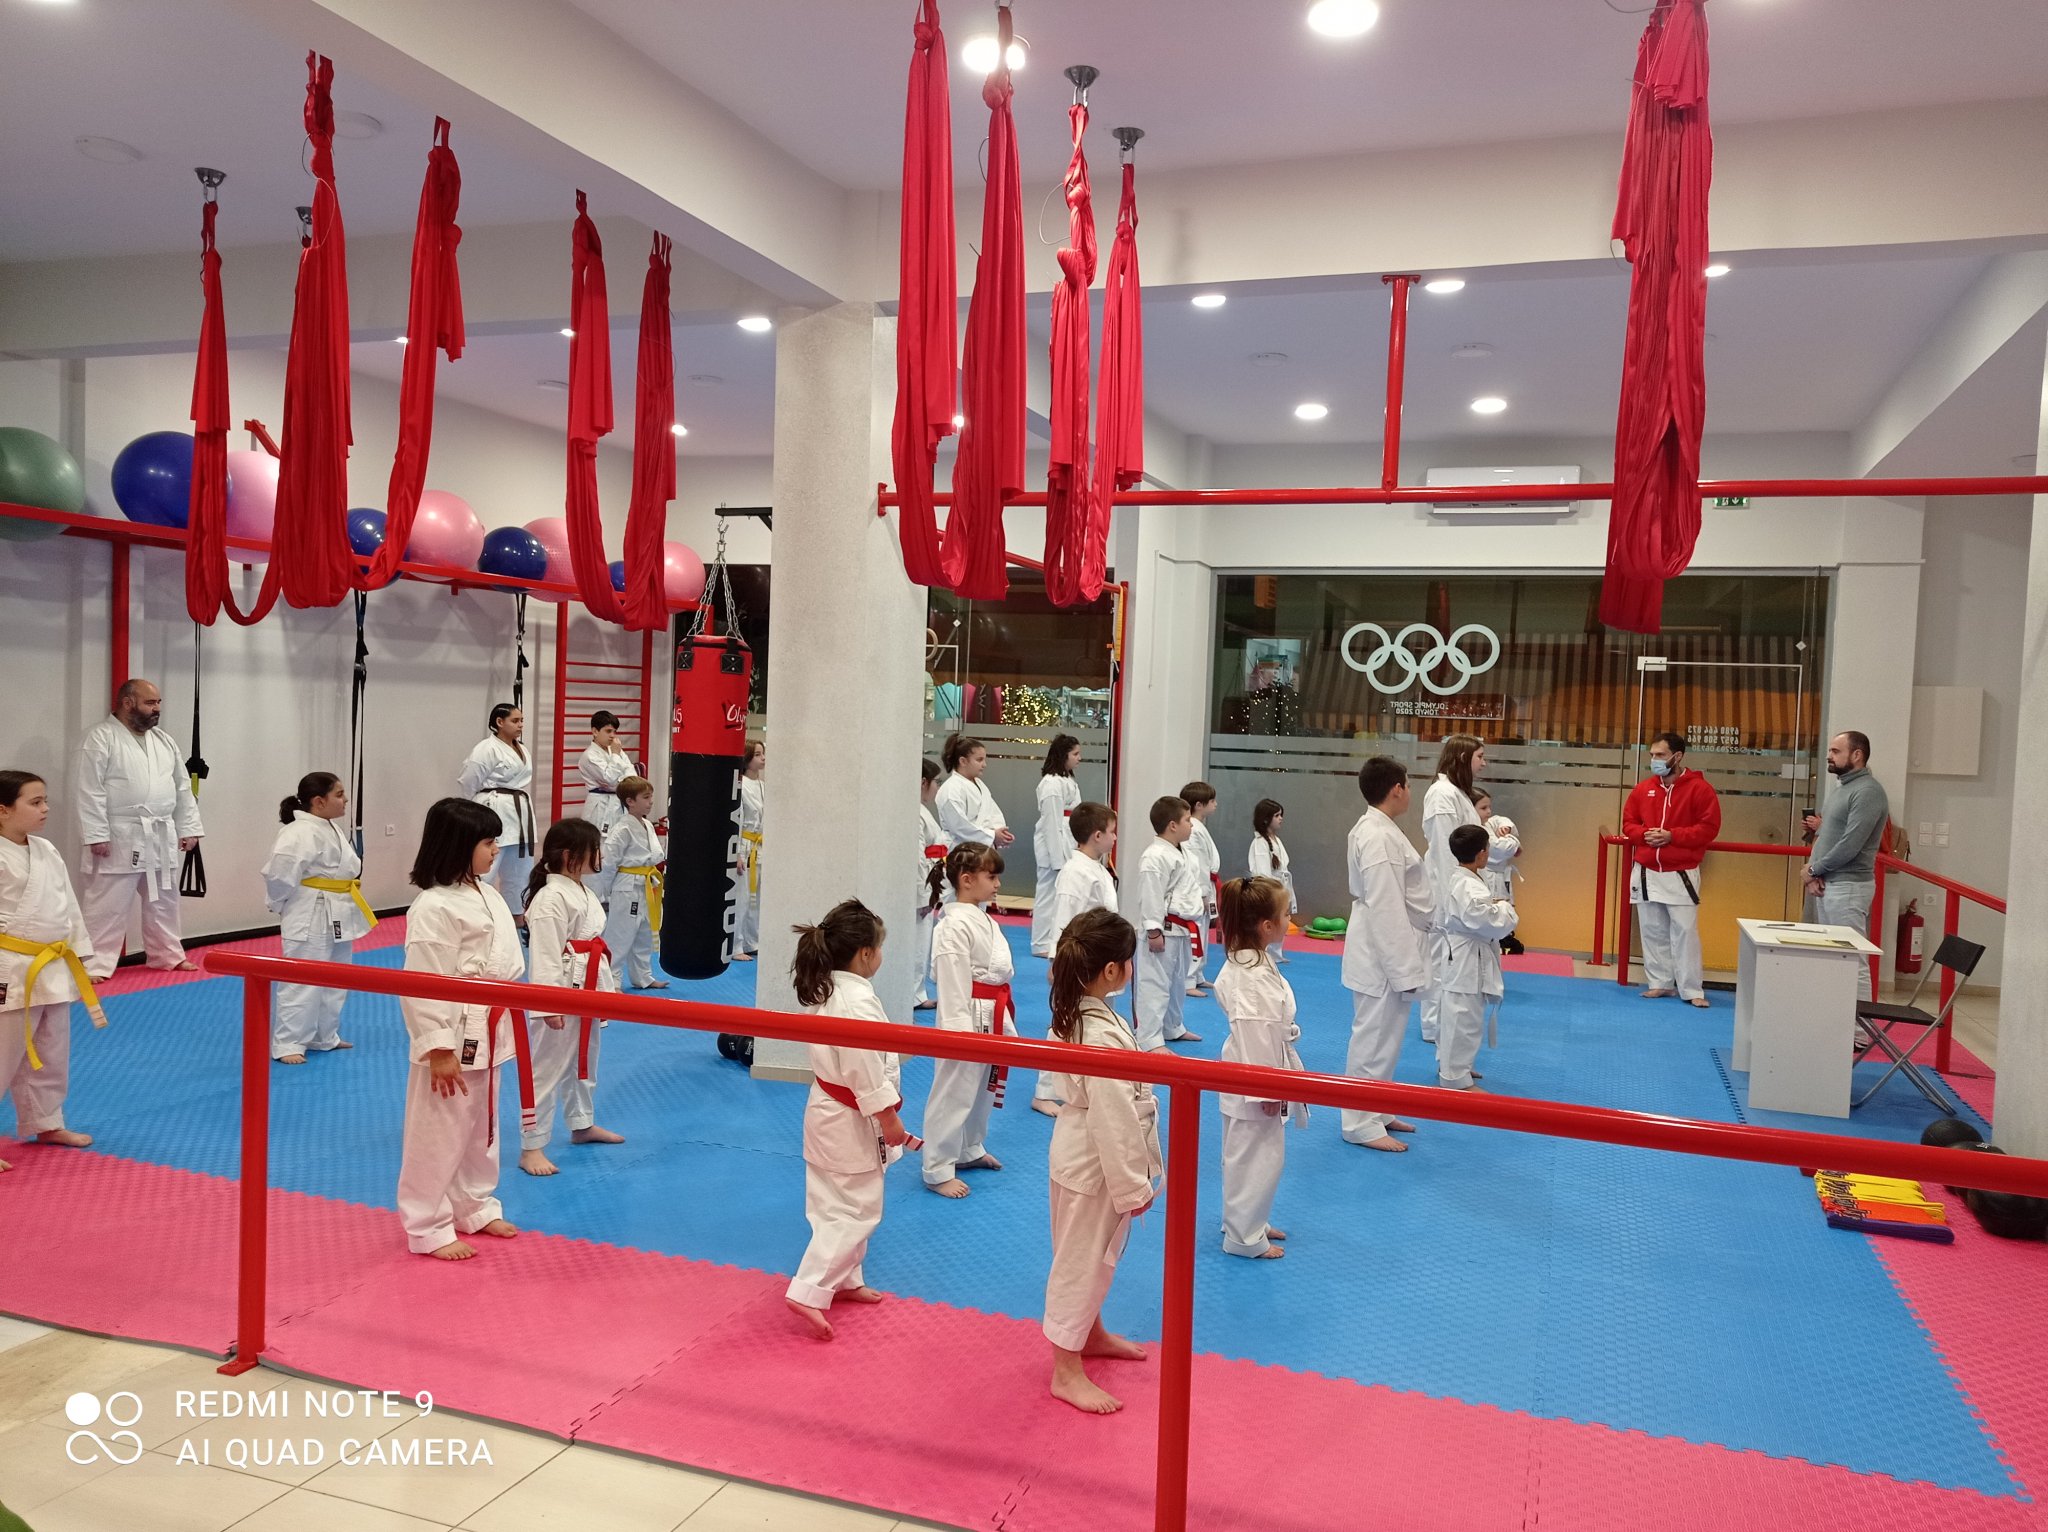 victorious-karate-club-proagogikes-eksetaseis-02-sportshunter